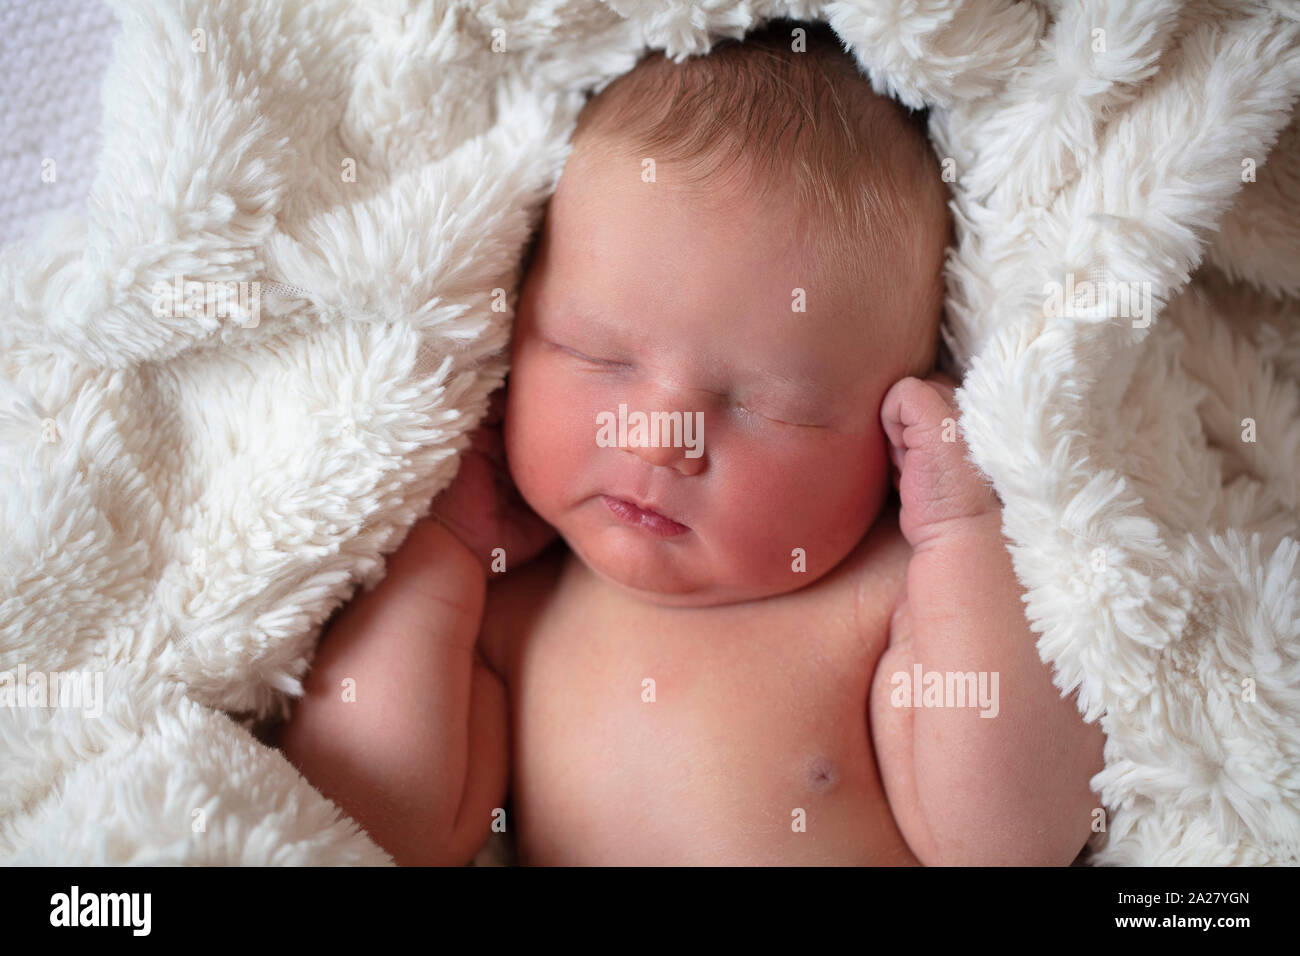 Eine schöne New Born Baby schlafen in einem Fell Decke Stockfoto